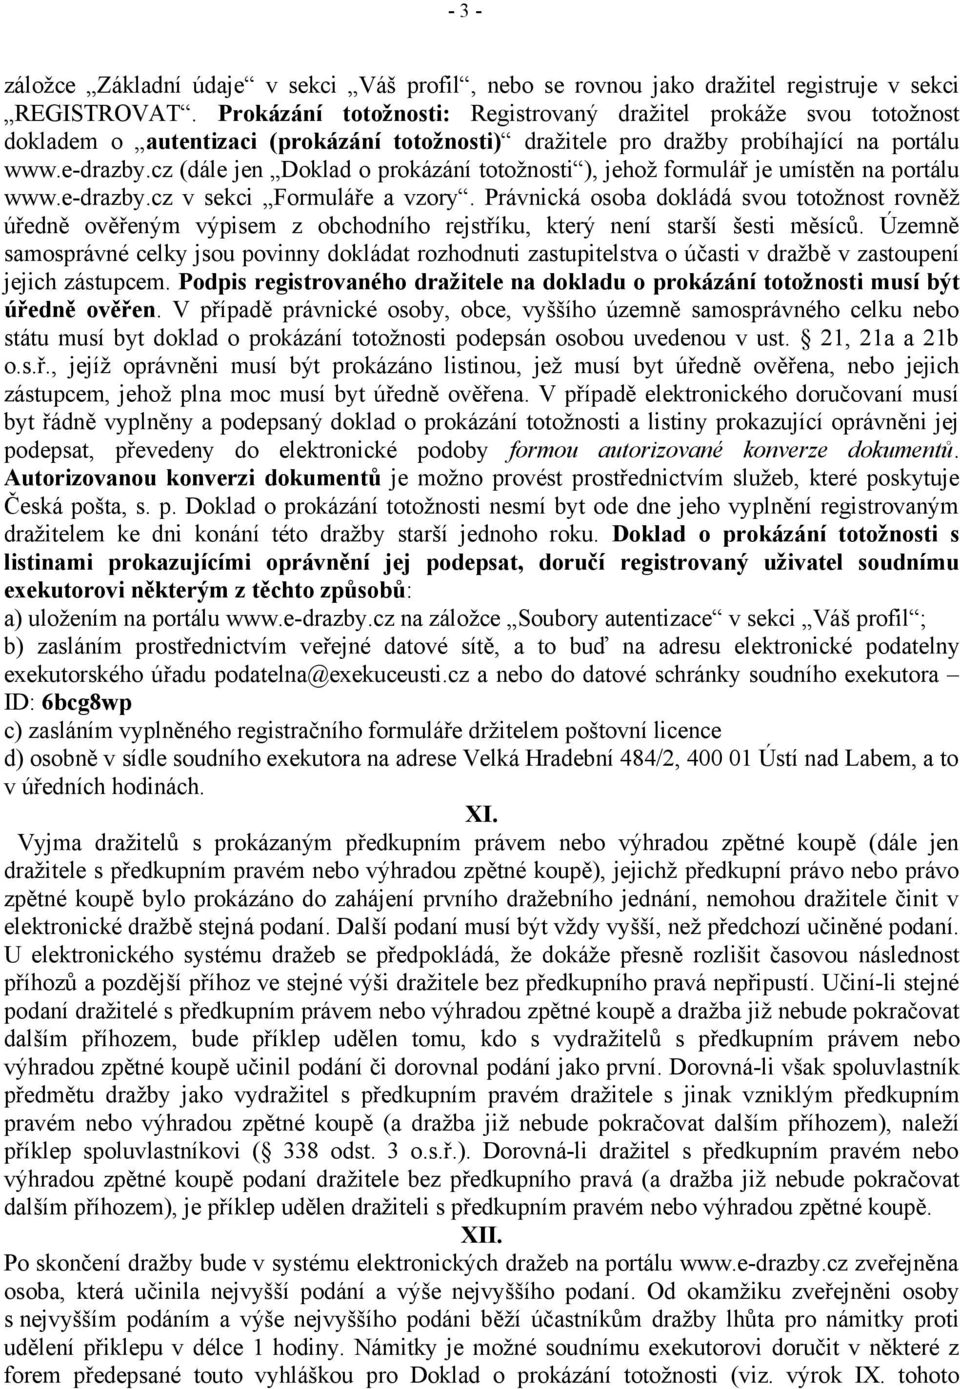 cz (dále jen Doklad o prokázání totožnosti ), jehož formulář je umístěn na portálu www.e-drazby.cz v sekci Formuláře a vzory.